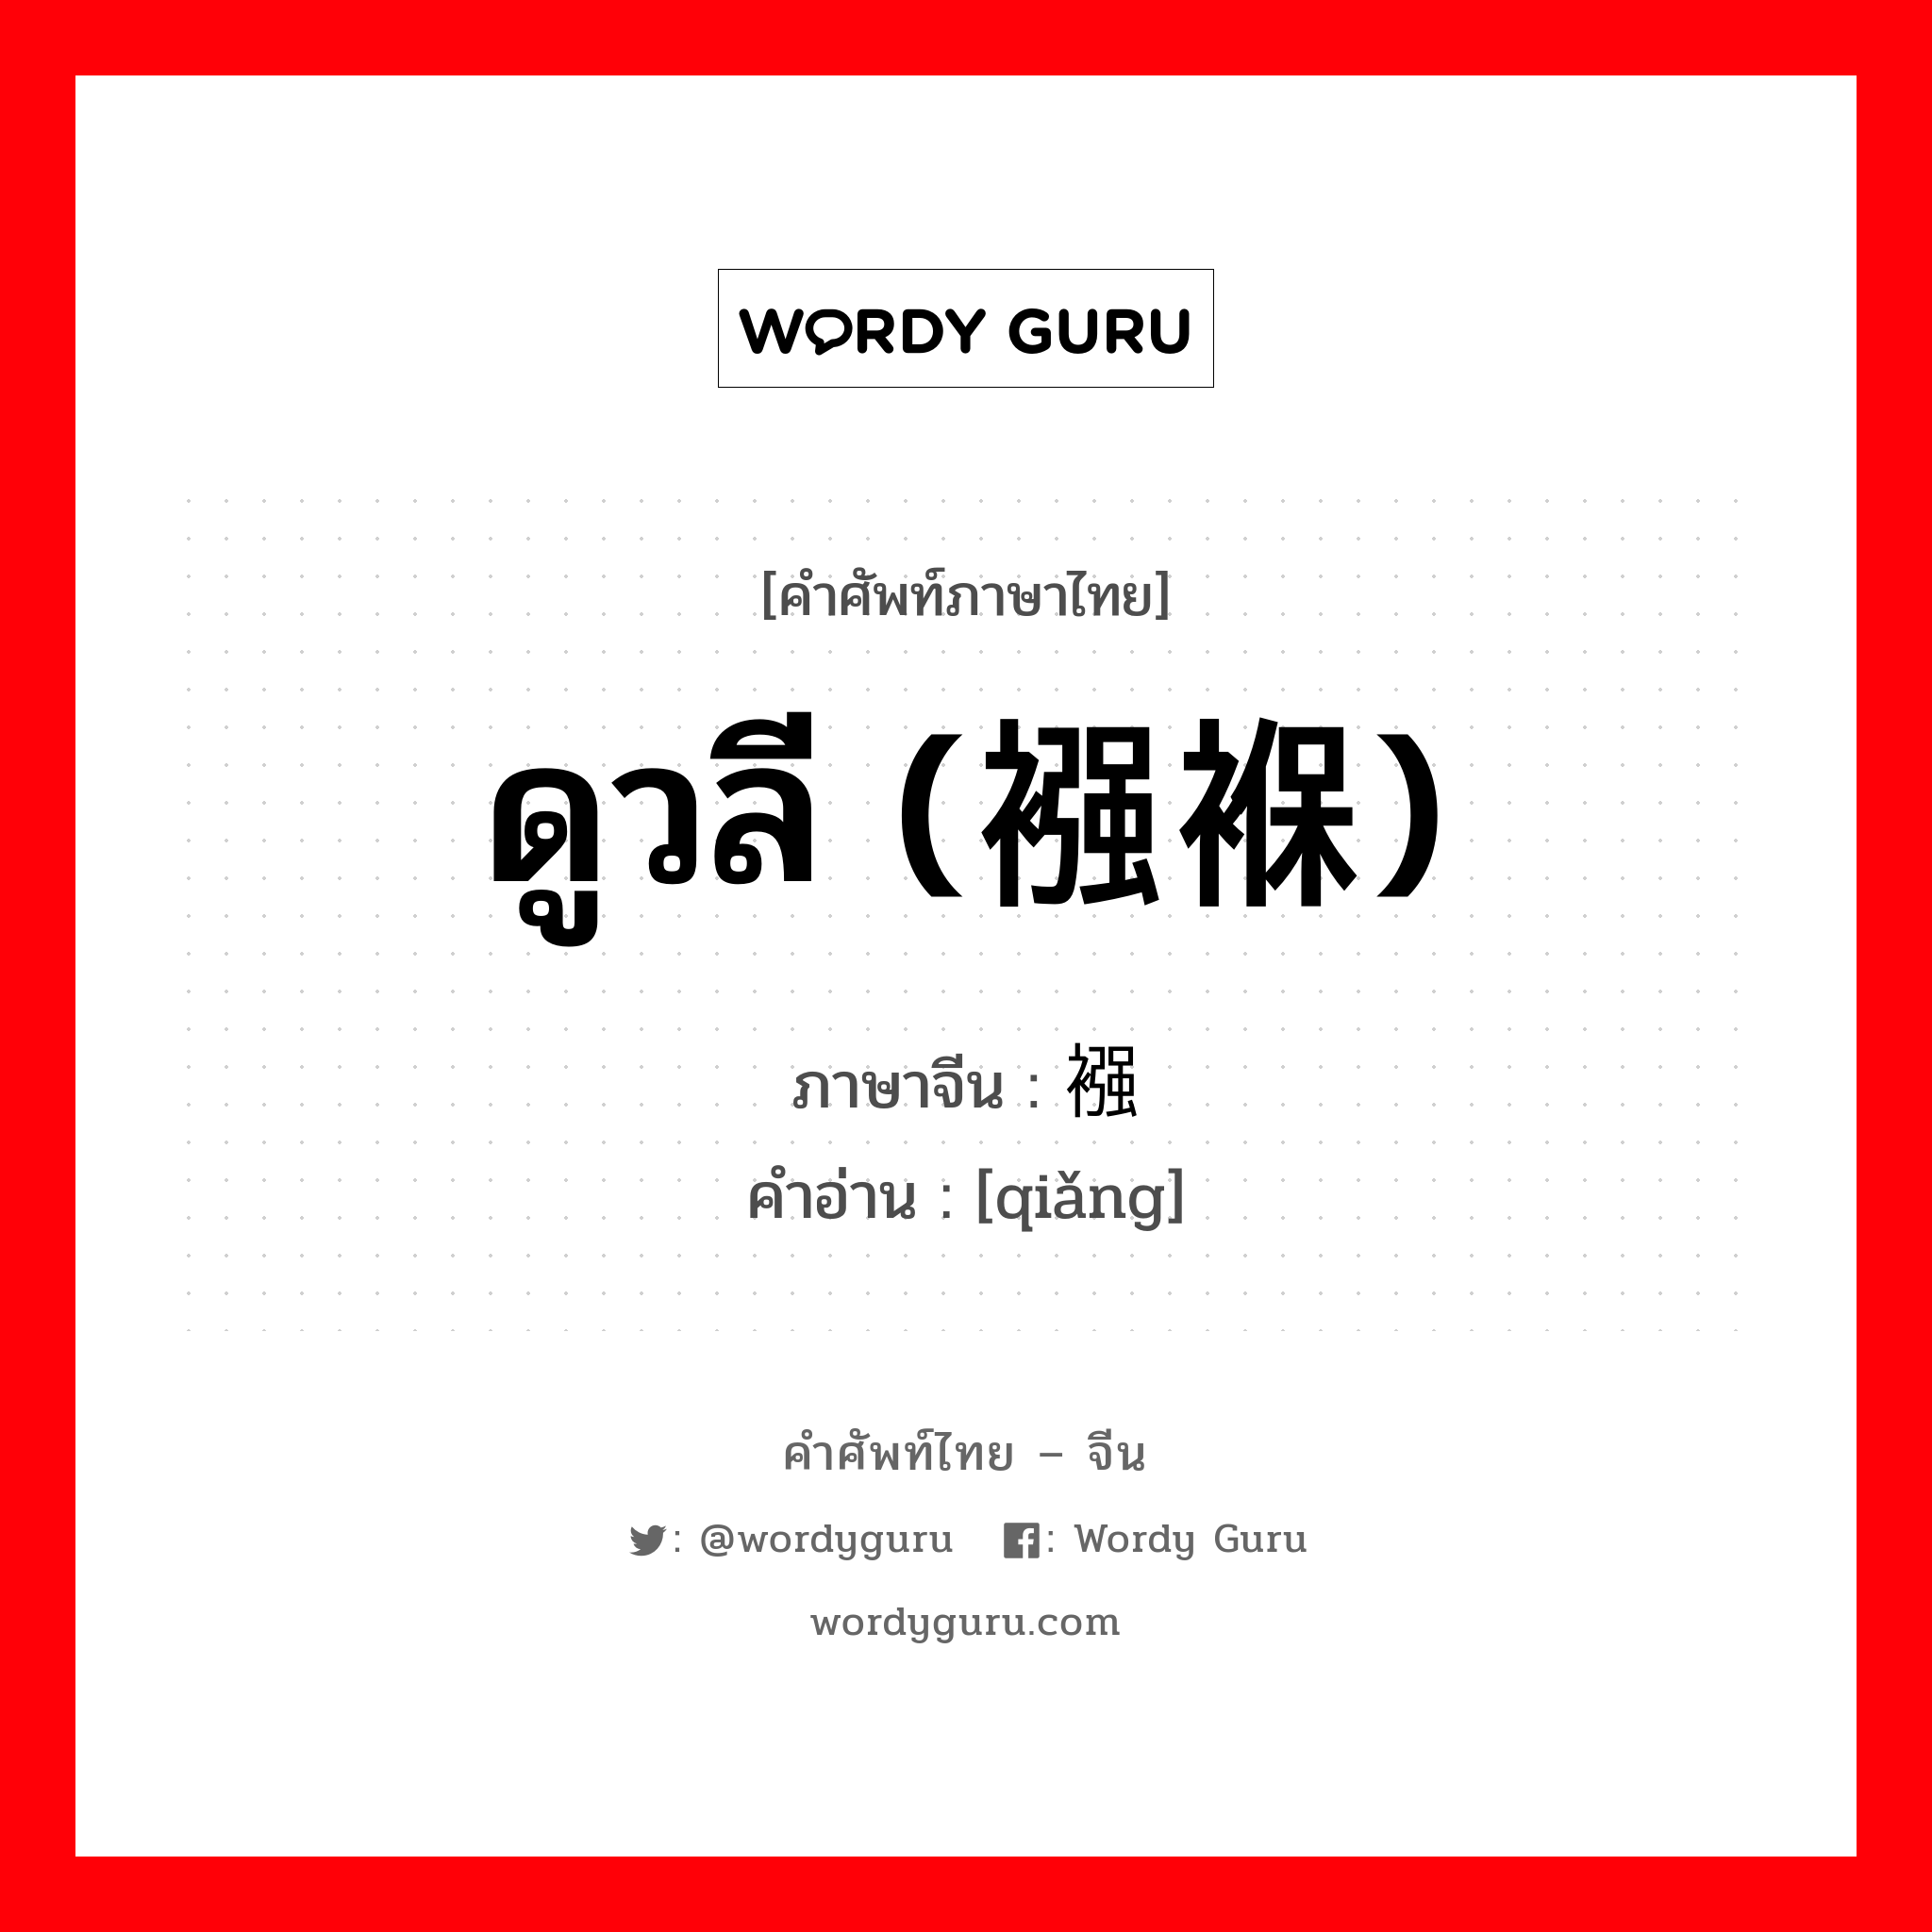 ดูวลี (襁褓) ภาษาจีนคืออะไร, คำศัพท์ภาษาไทย - จีน ดูวลี (襁褓) ภาษาจีน 襁 คำอ่าน [qiǎng]